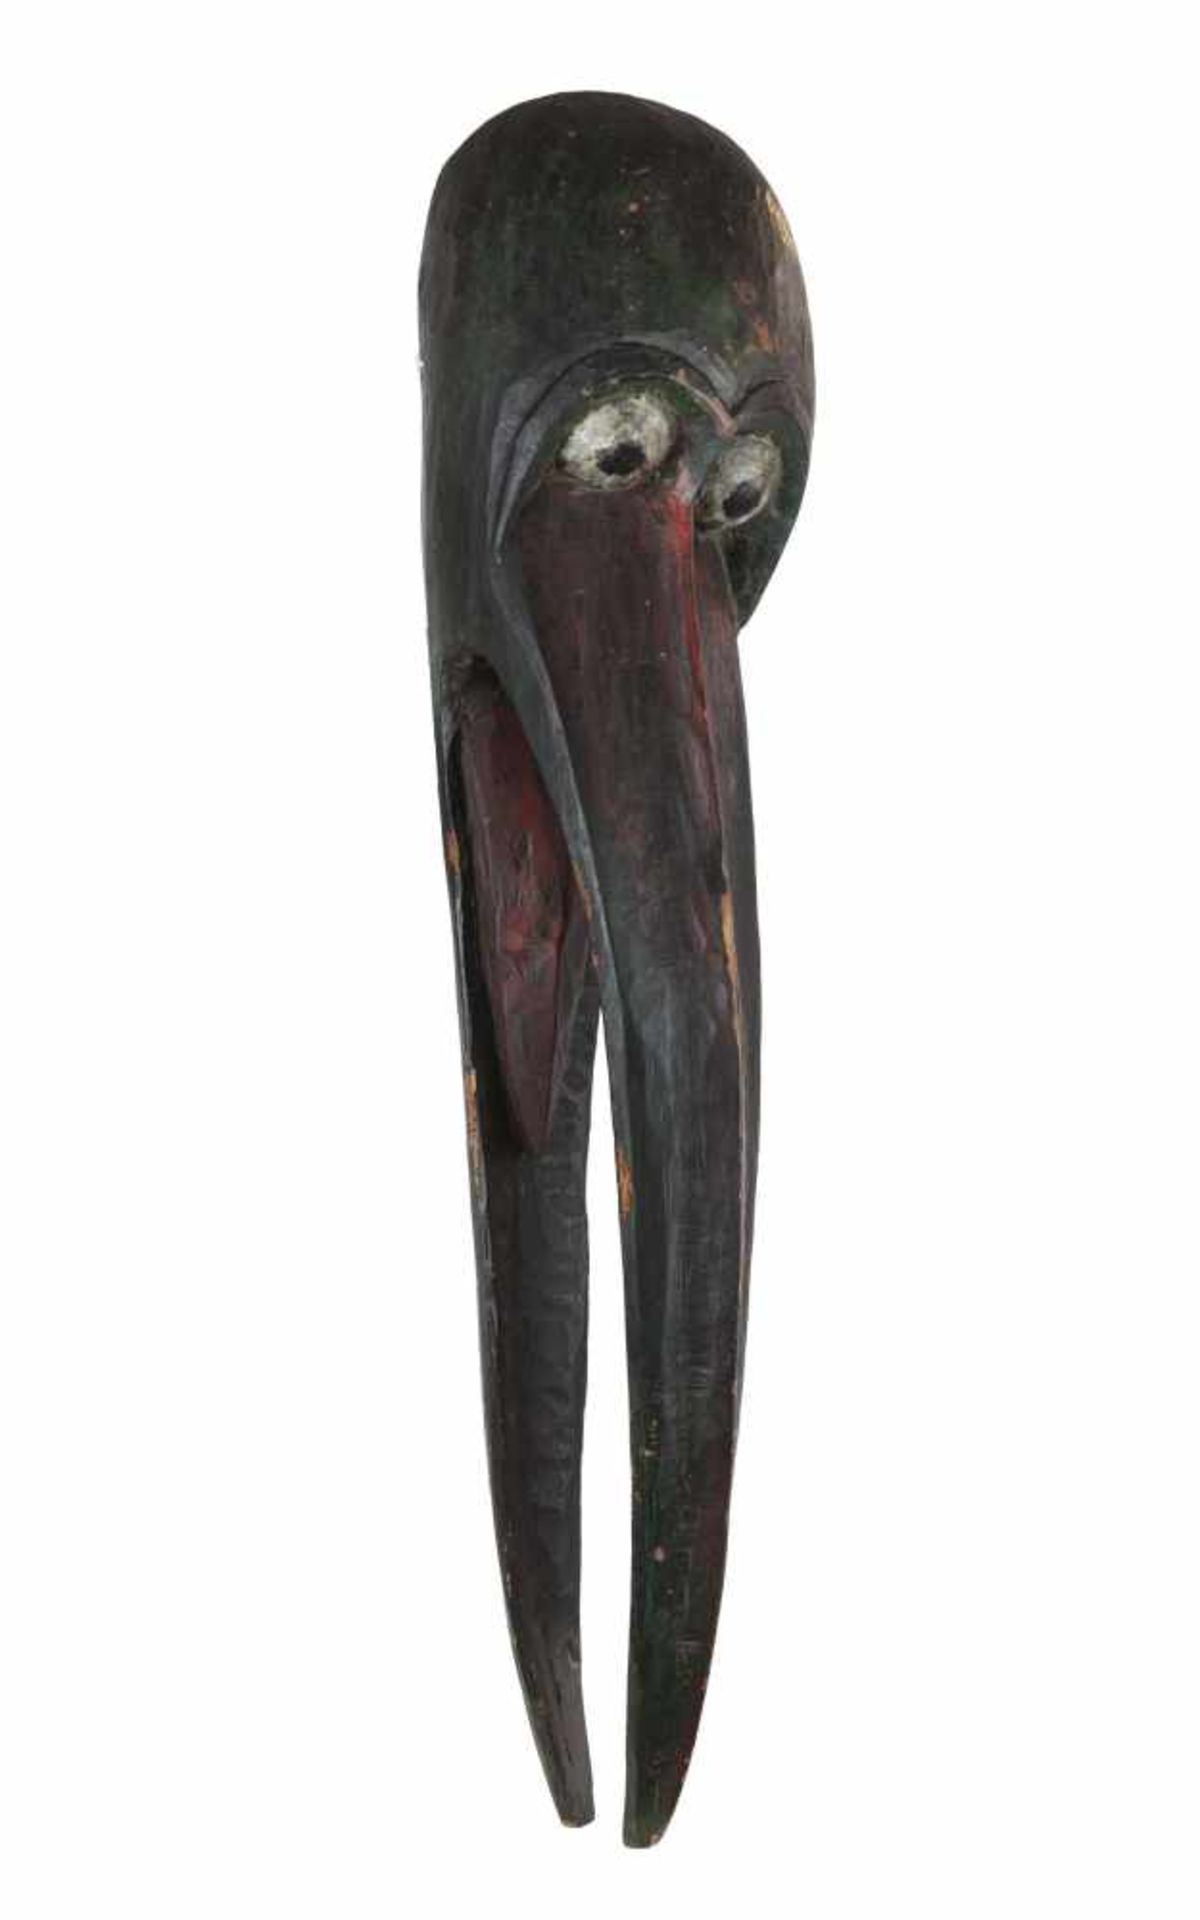 RARE GRAND MASQUE DE MARABOUTEn bois sculpté, représenté les yeux grands ouverts, la crâne